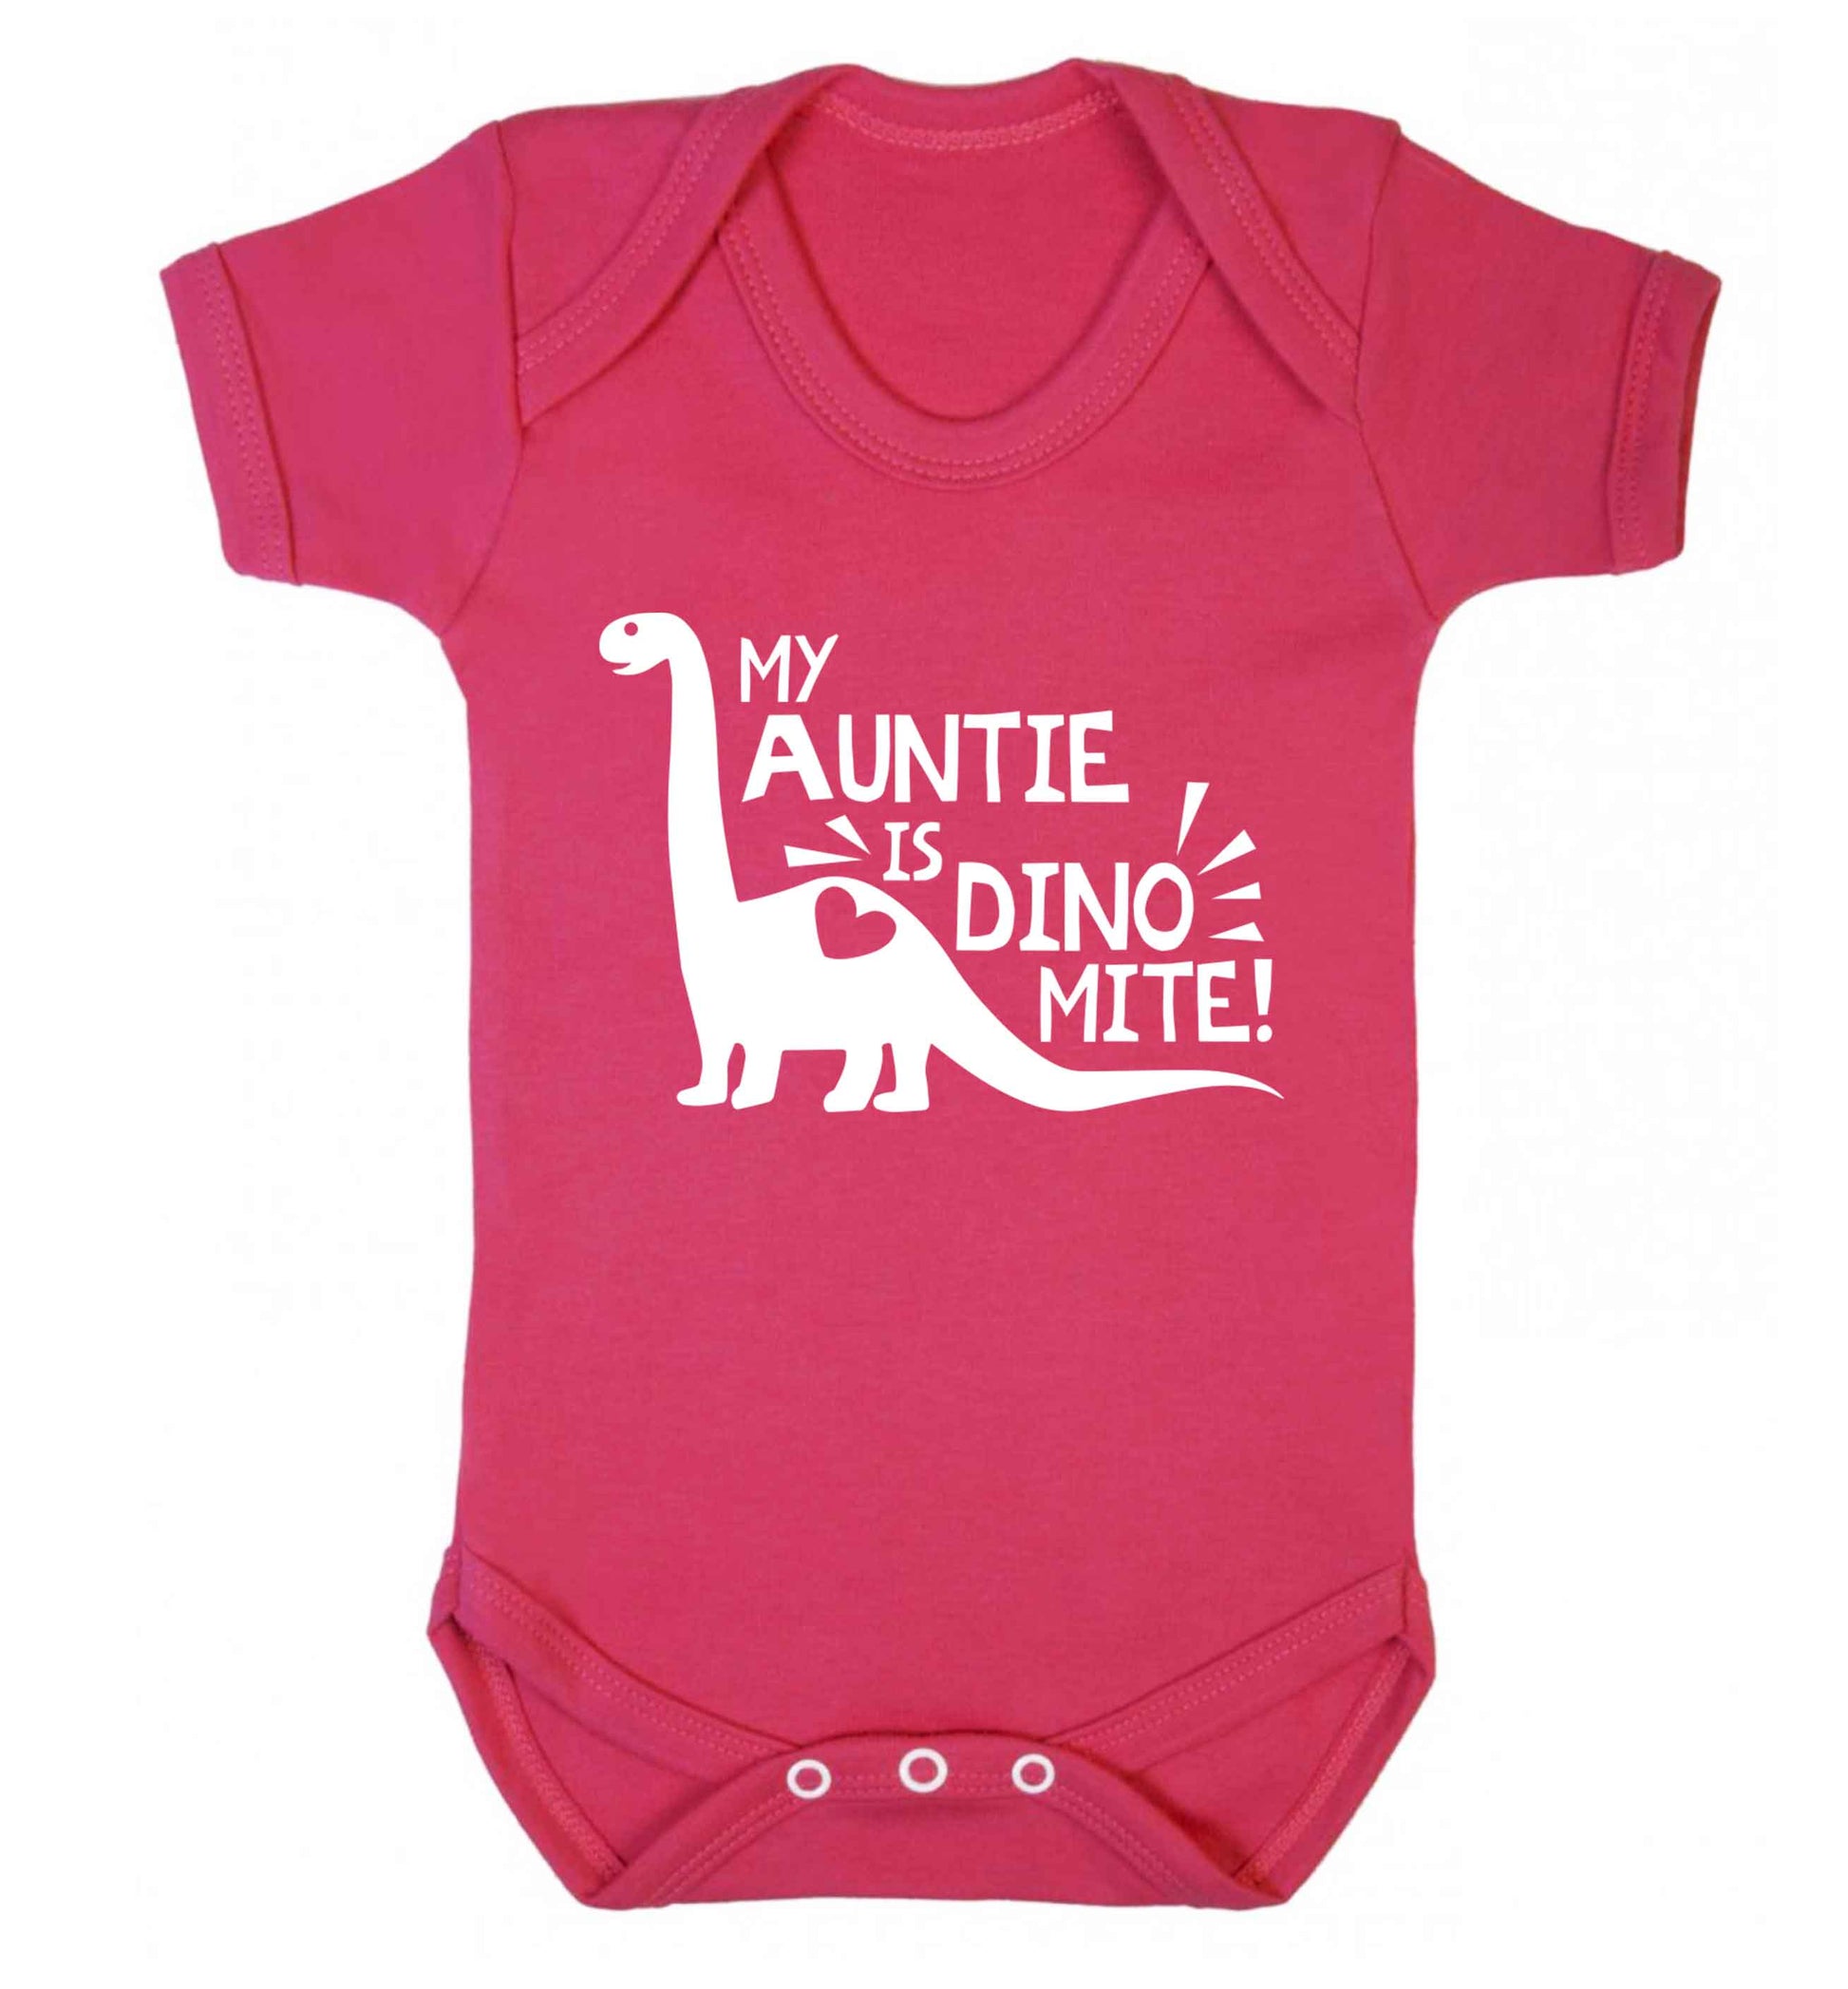 My auntie is dinomite! Baby Vest dark pink 18-24 months